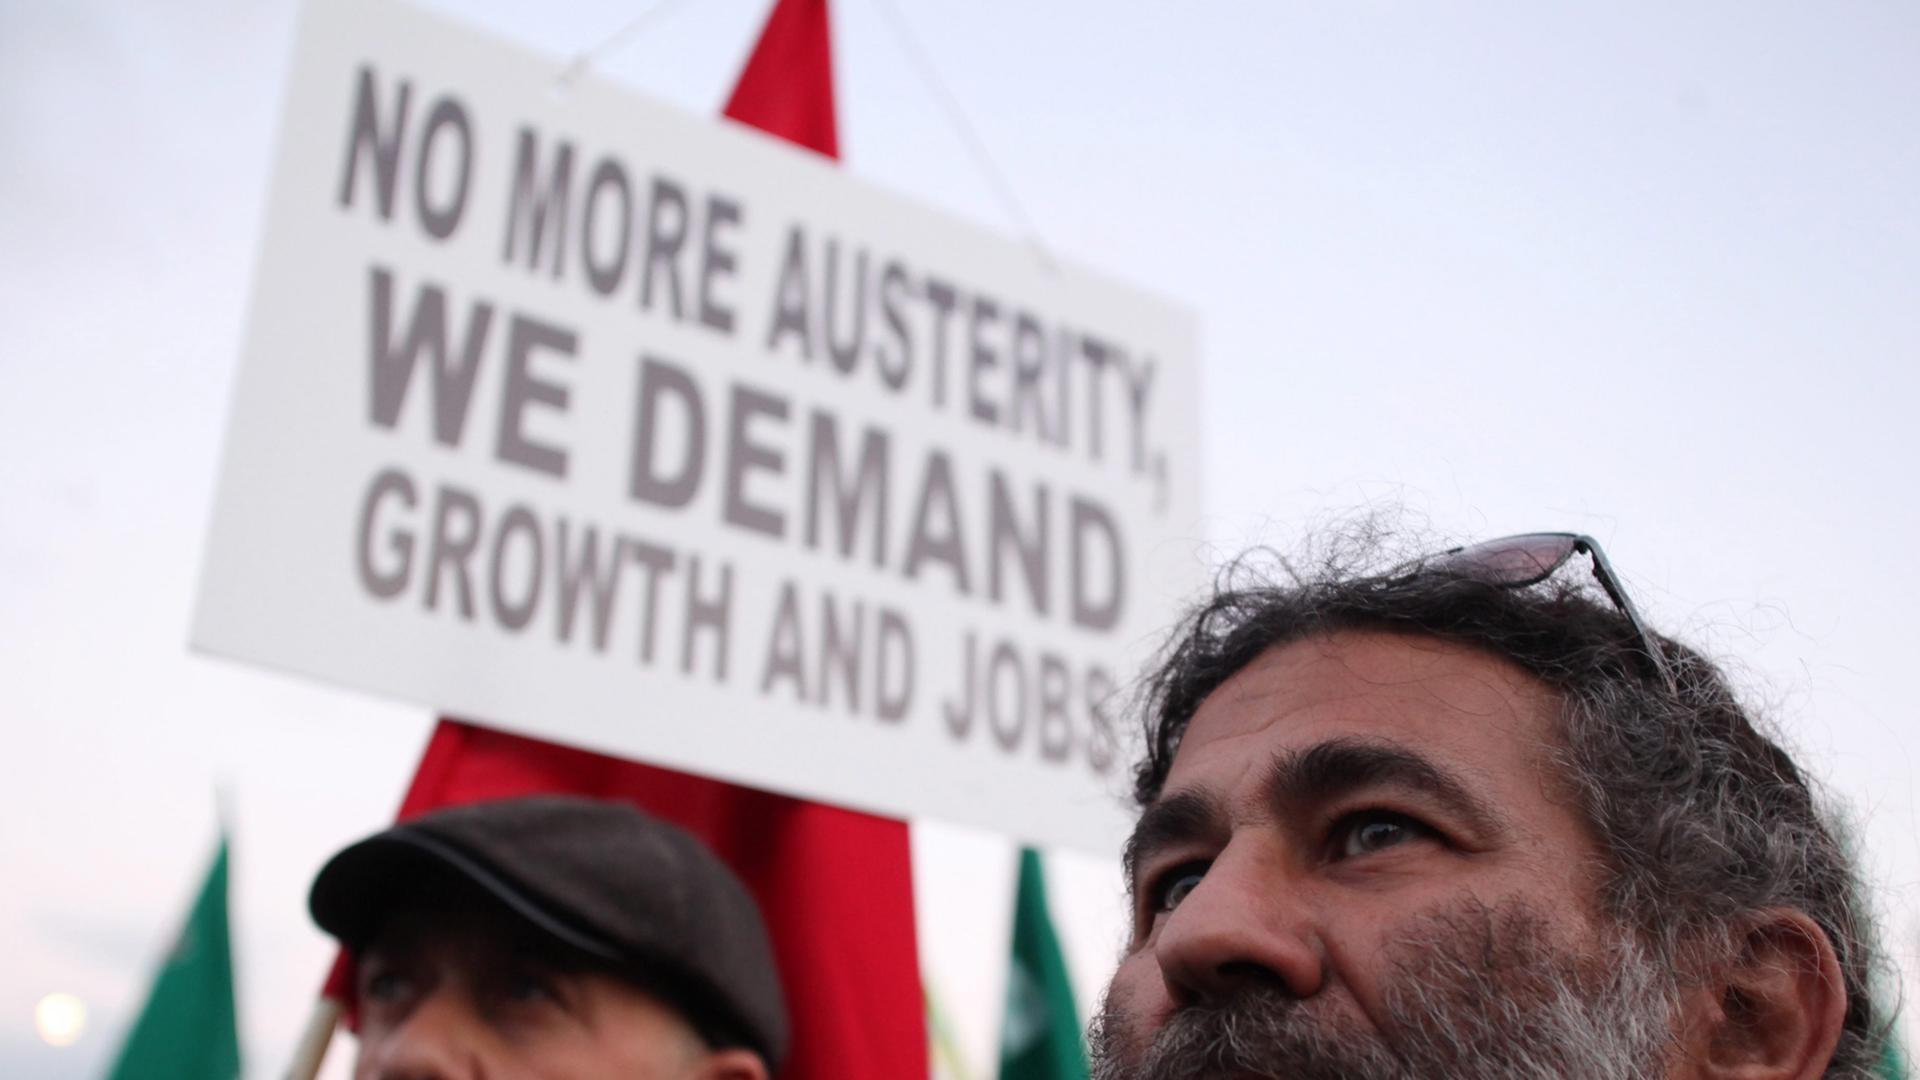 Zwei Demonstranten, im Hintergrund ein Plakat mit der Aufschrift: "No more austerity, we demand jobs and growth"